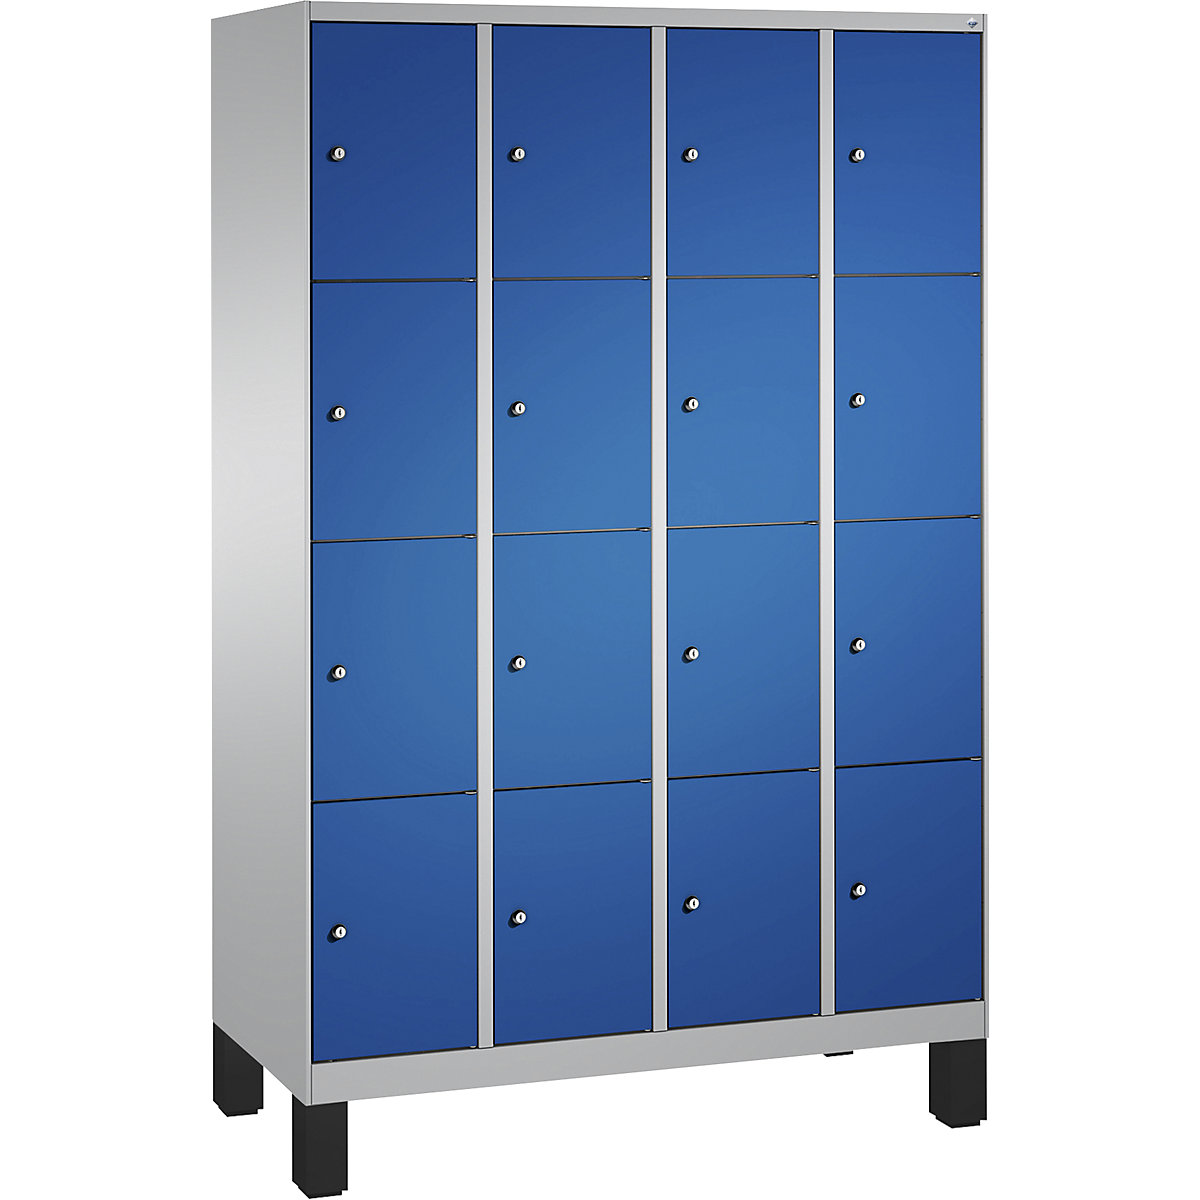 Armoire à casiers sur pieds EVOLO – C+P, 4 compartiments, 4 casiers chacun, largeur compartiments 300 mm, aluminium / bleu gentiane-4